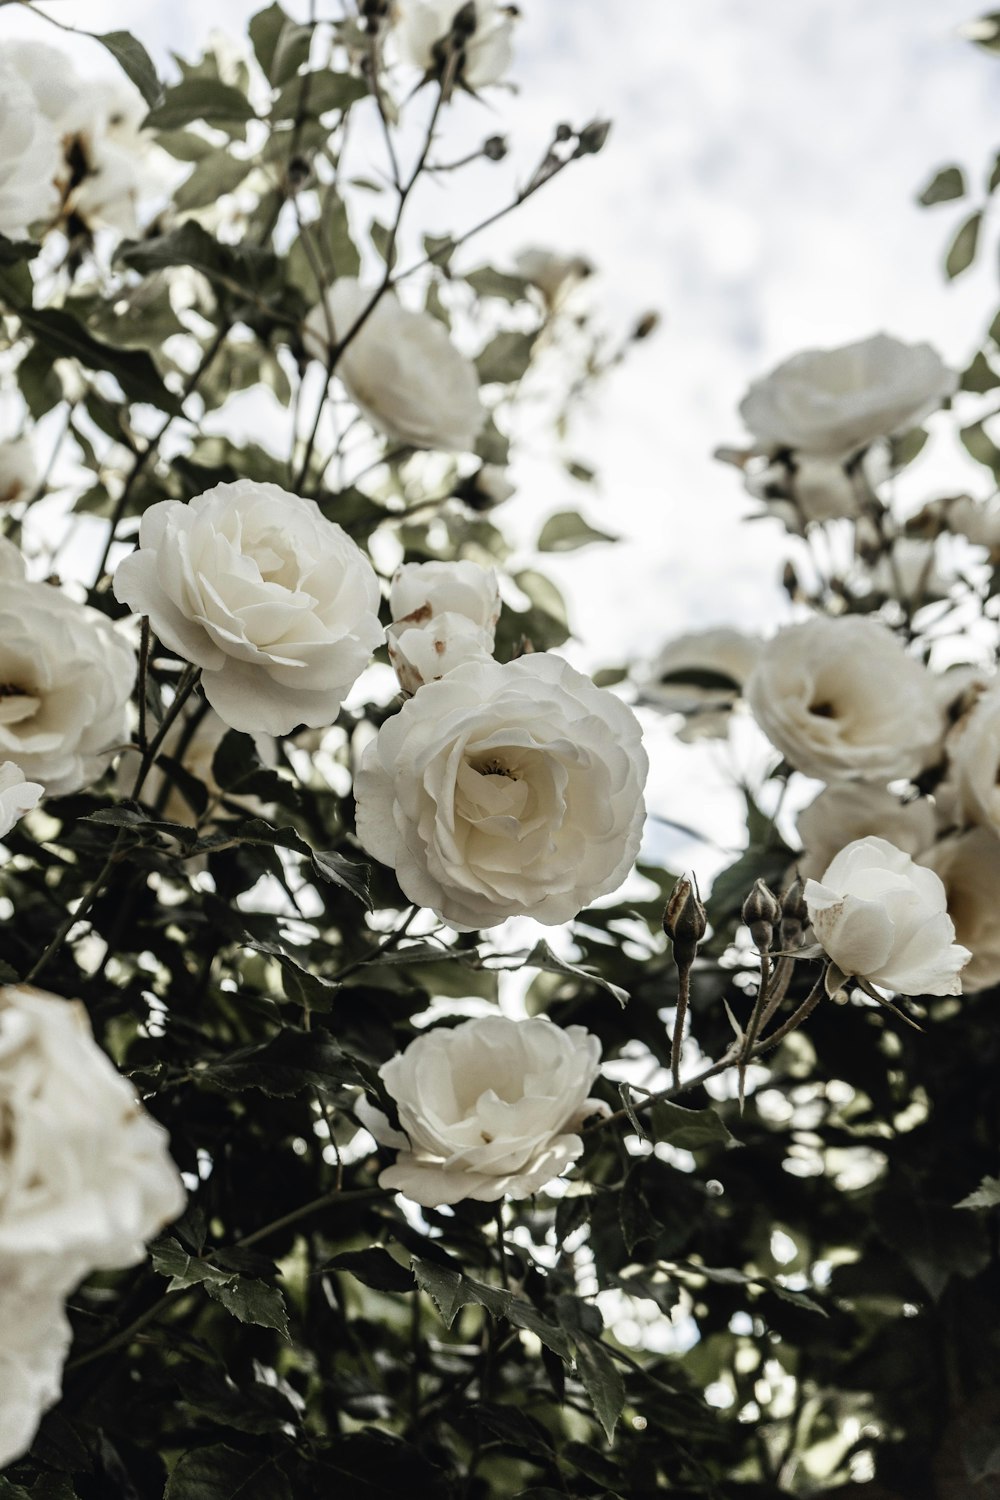 Rose bianche in fiore durante il giorno foto – Fiore Immagine gratuita su  Unsplash